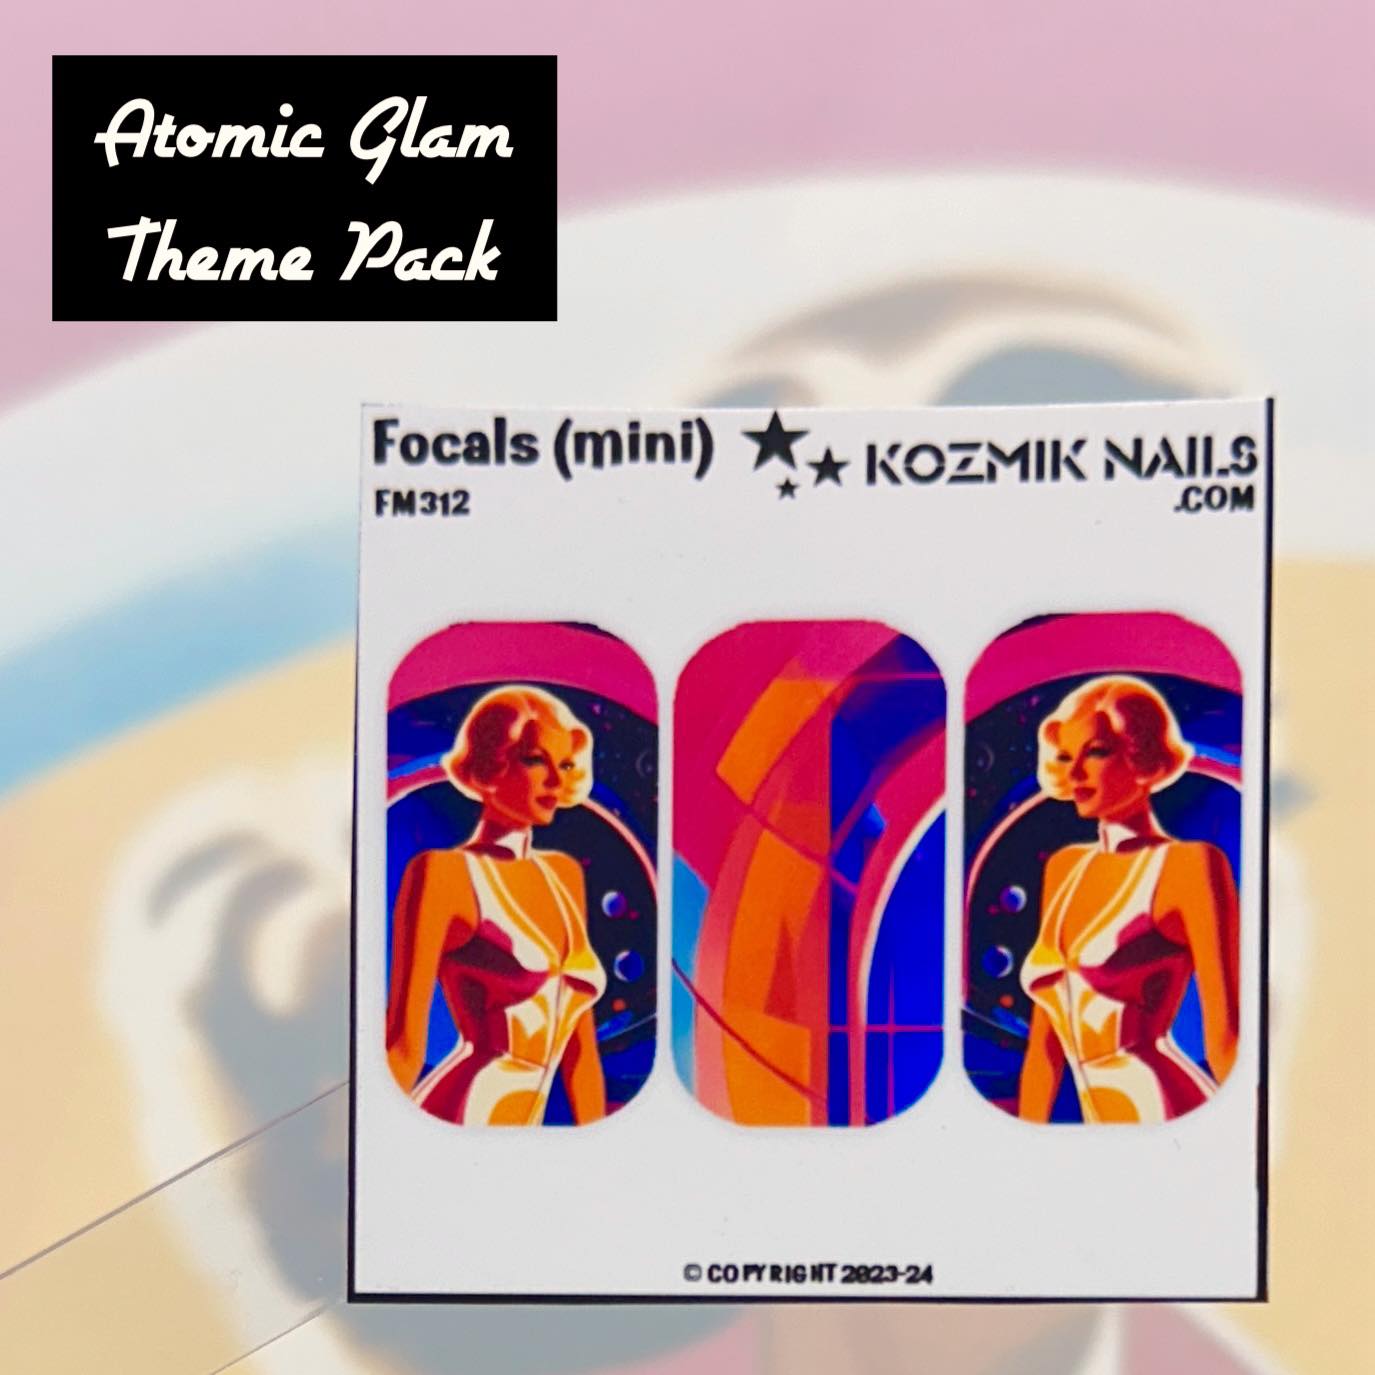 Atomic Glam